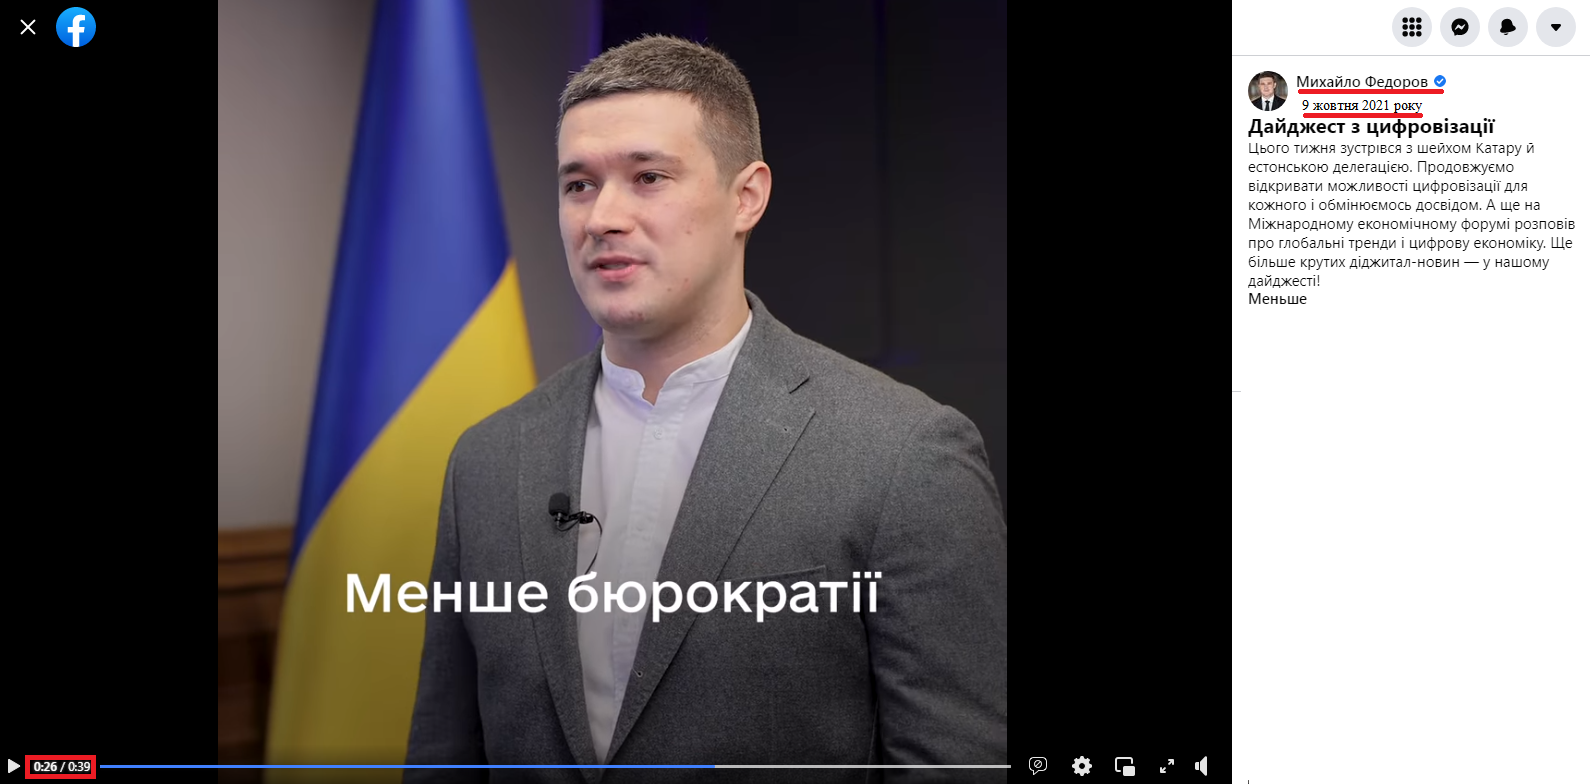 https://www.facebook.com/mykhailofedorov.com.ua/videos/393402719126211